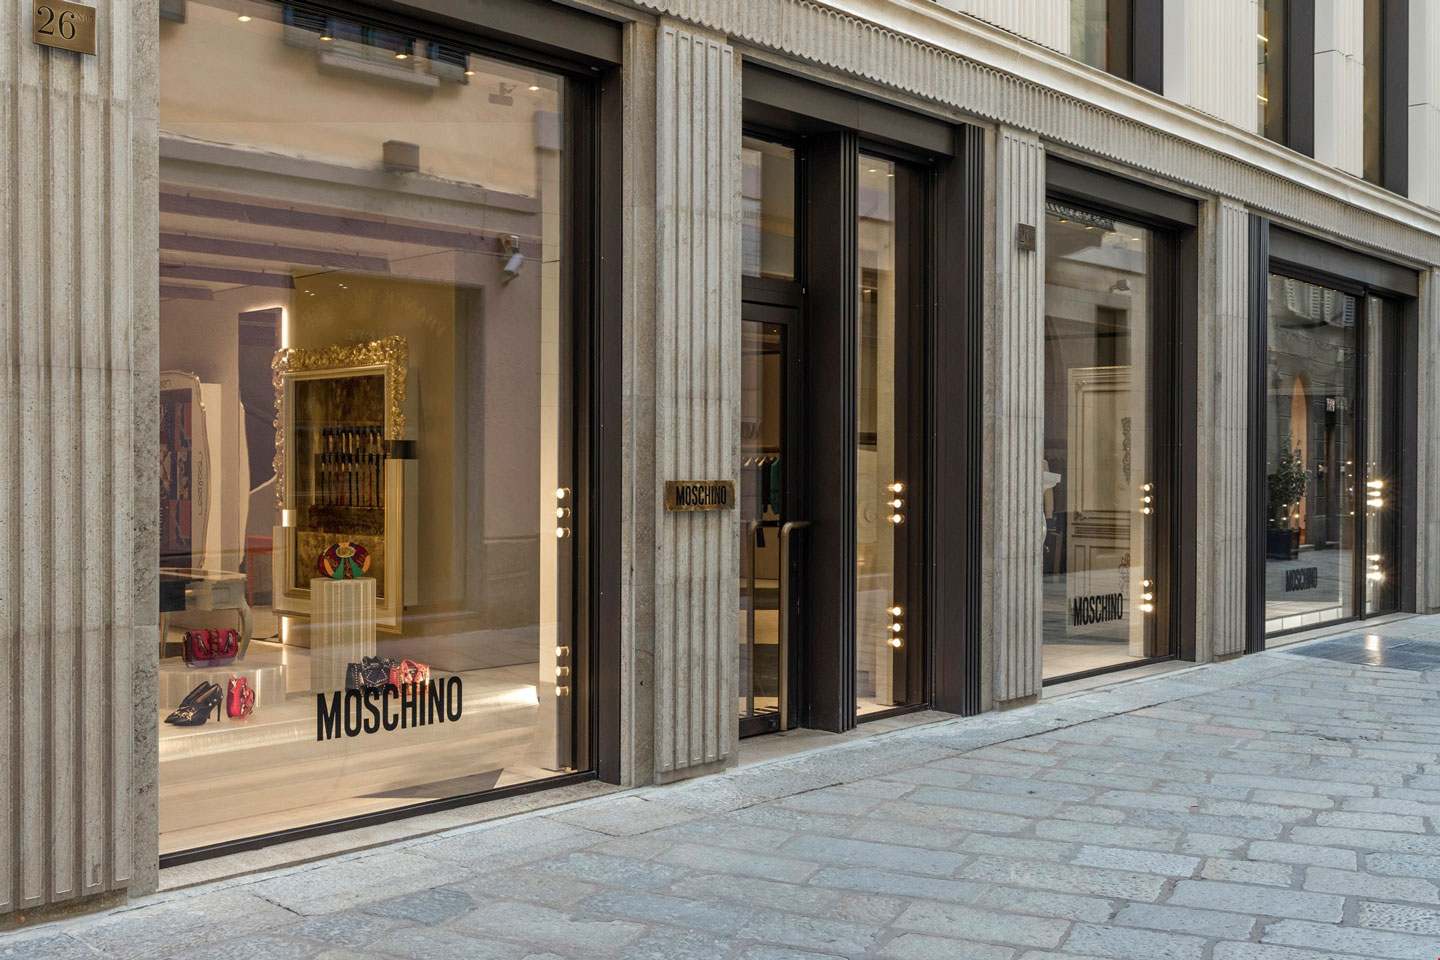 The Moschino store inside Palazzo Pertusati in via della Spiga, Milan